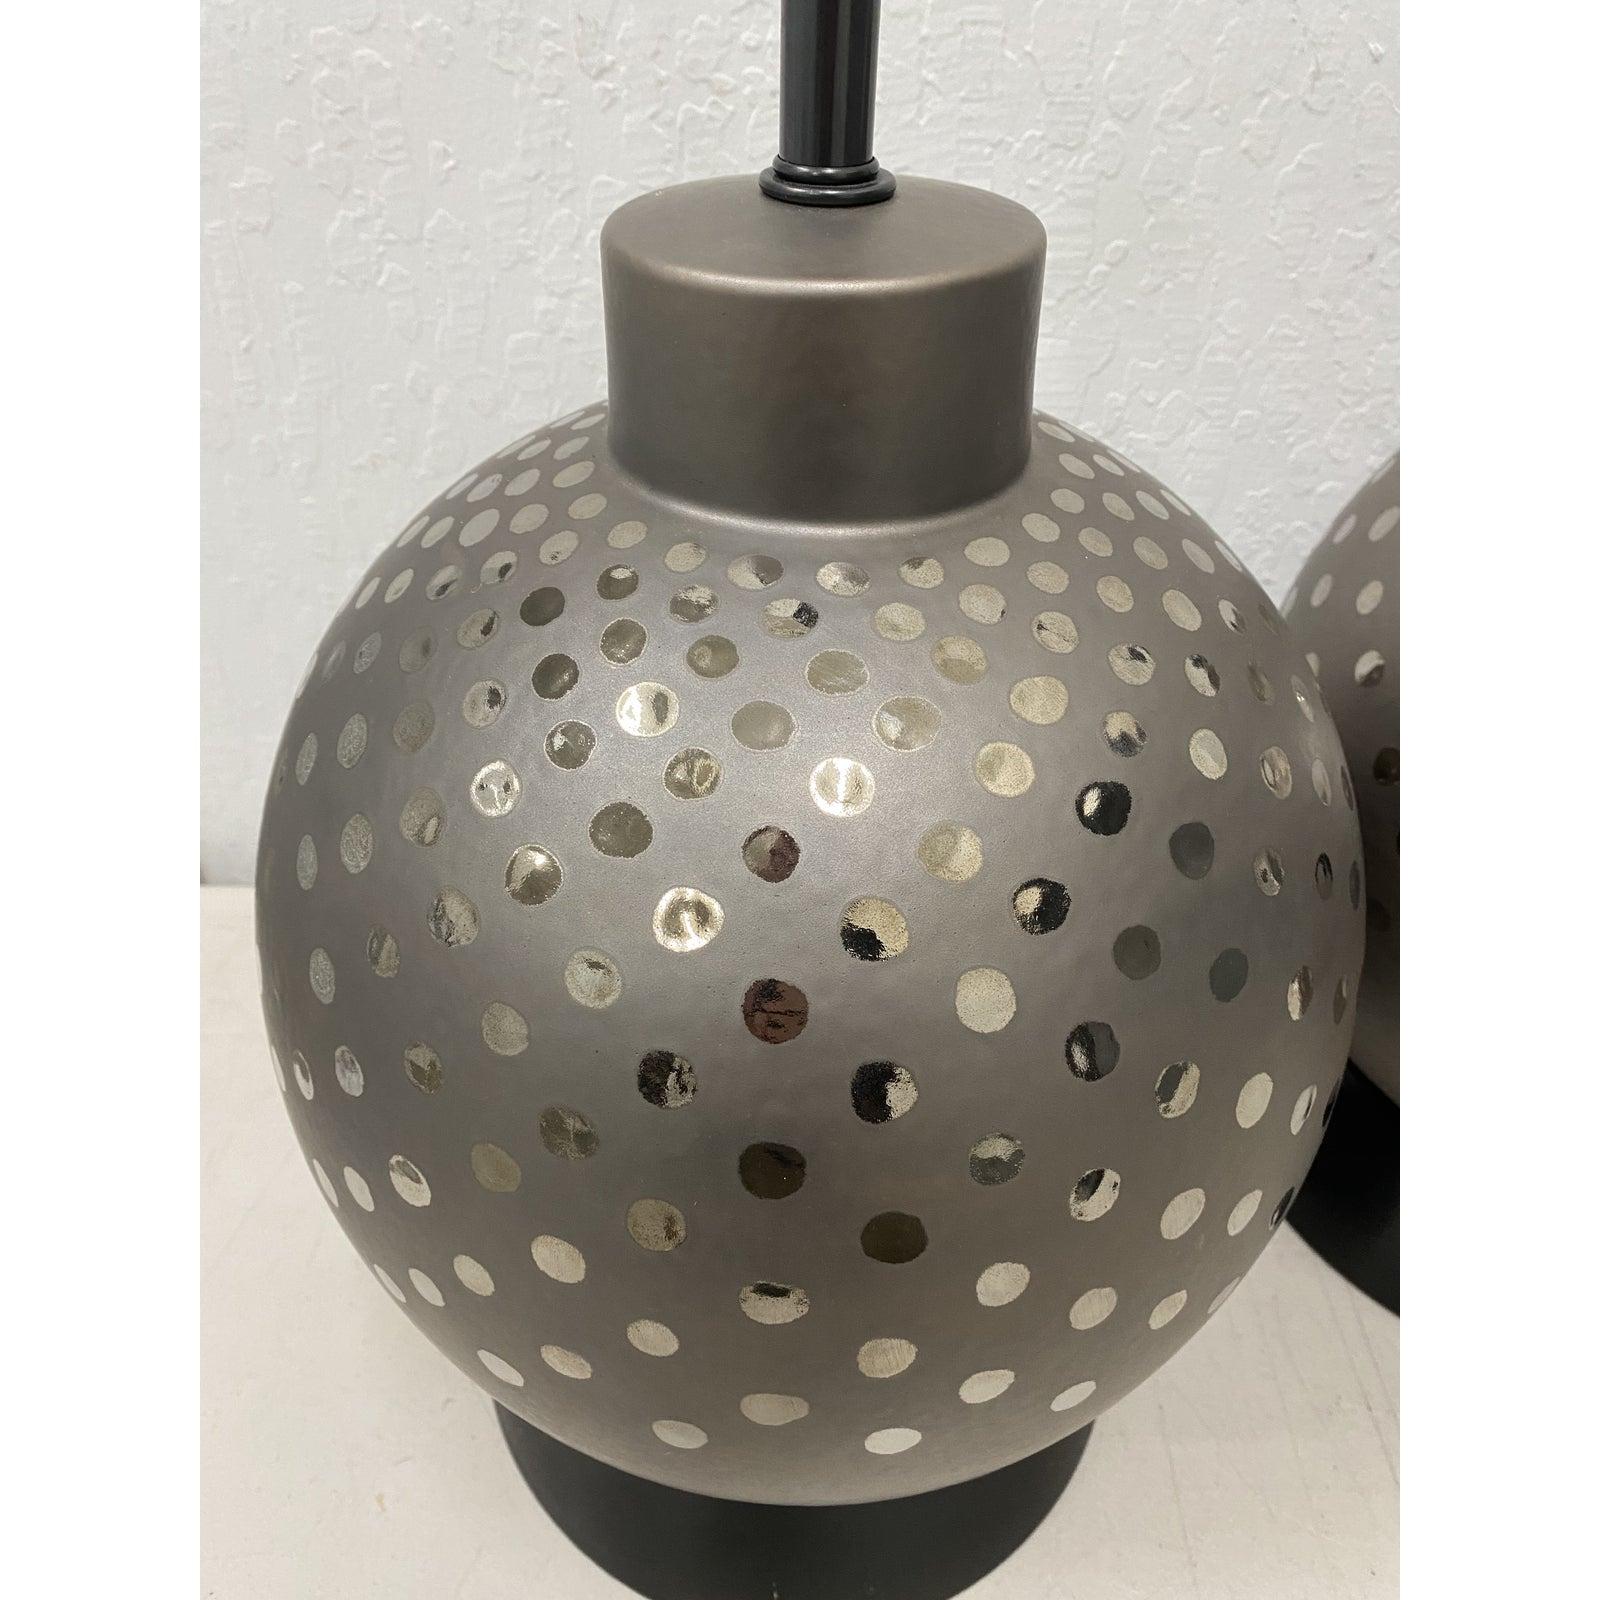 Paire de lampes boules en céramique vintage à glaçure argentée métallique par Marbro circa 1970

Magnifiques lampes avec des taches d'argent métallique. Les abat-jour noirs sont fournis en l'état.

Les lampes ont leur câblage d'origine et sont